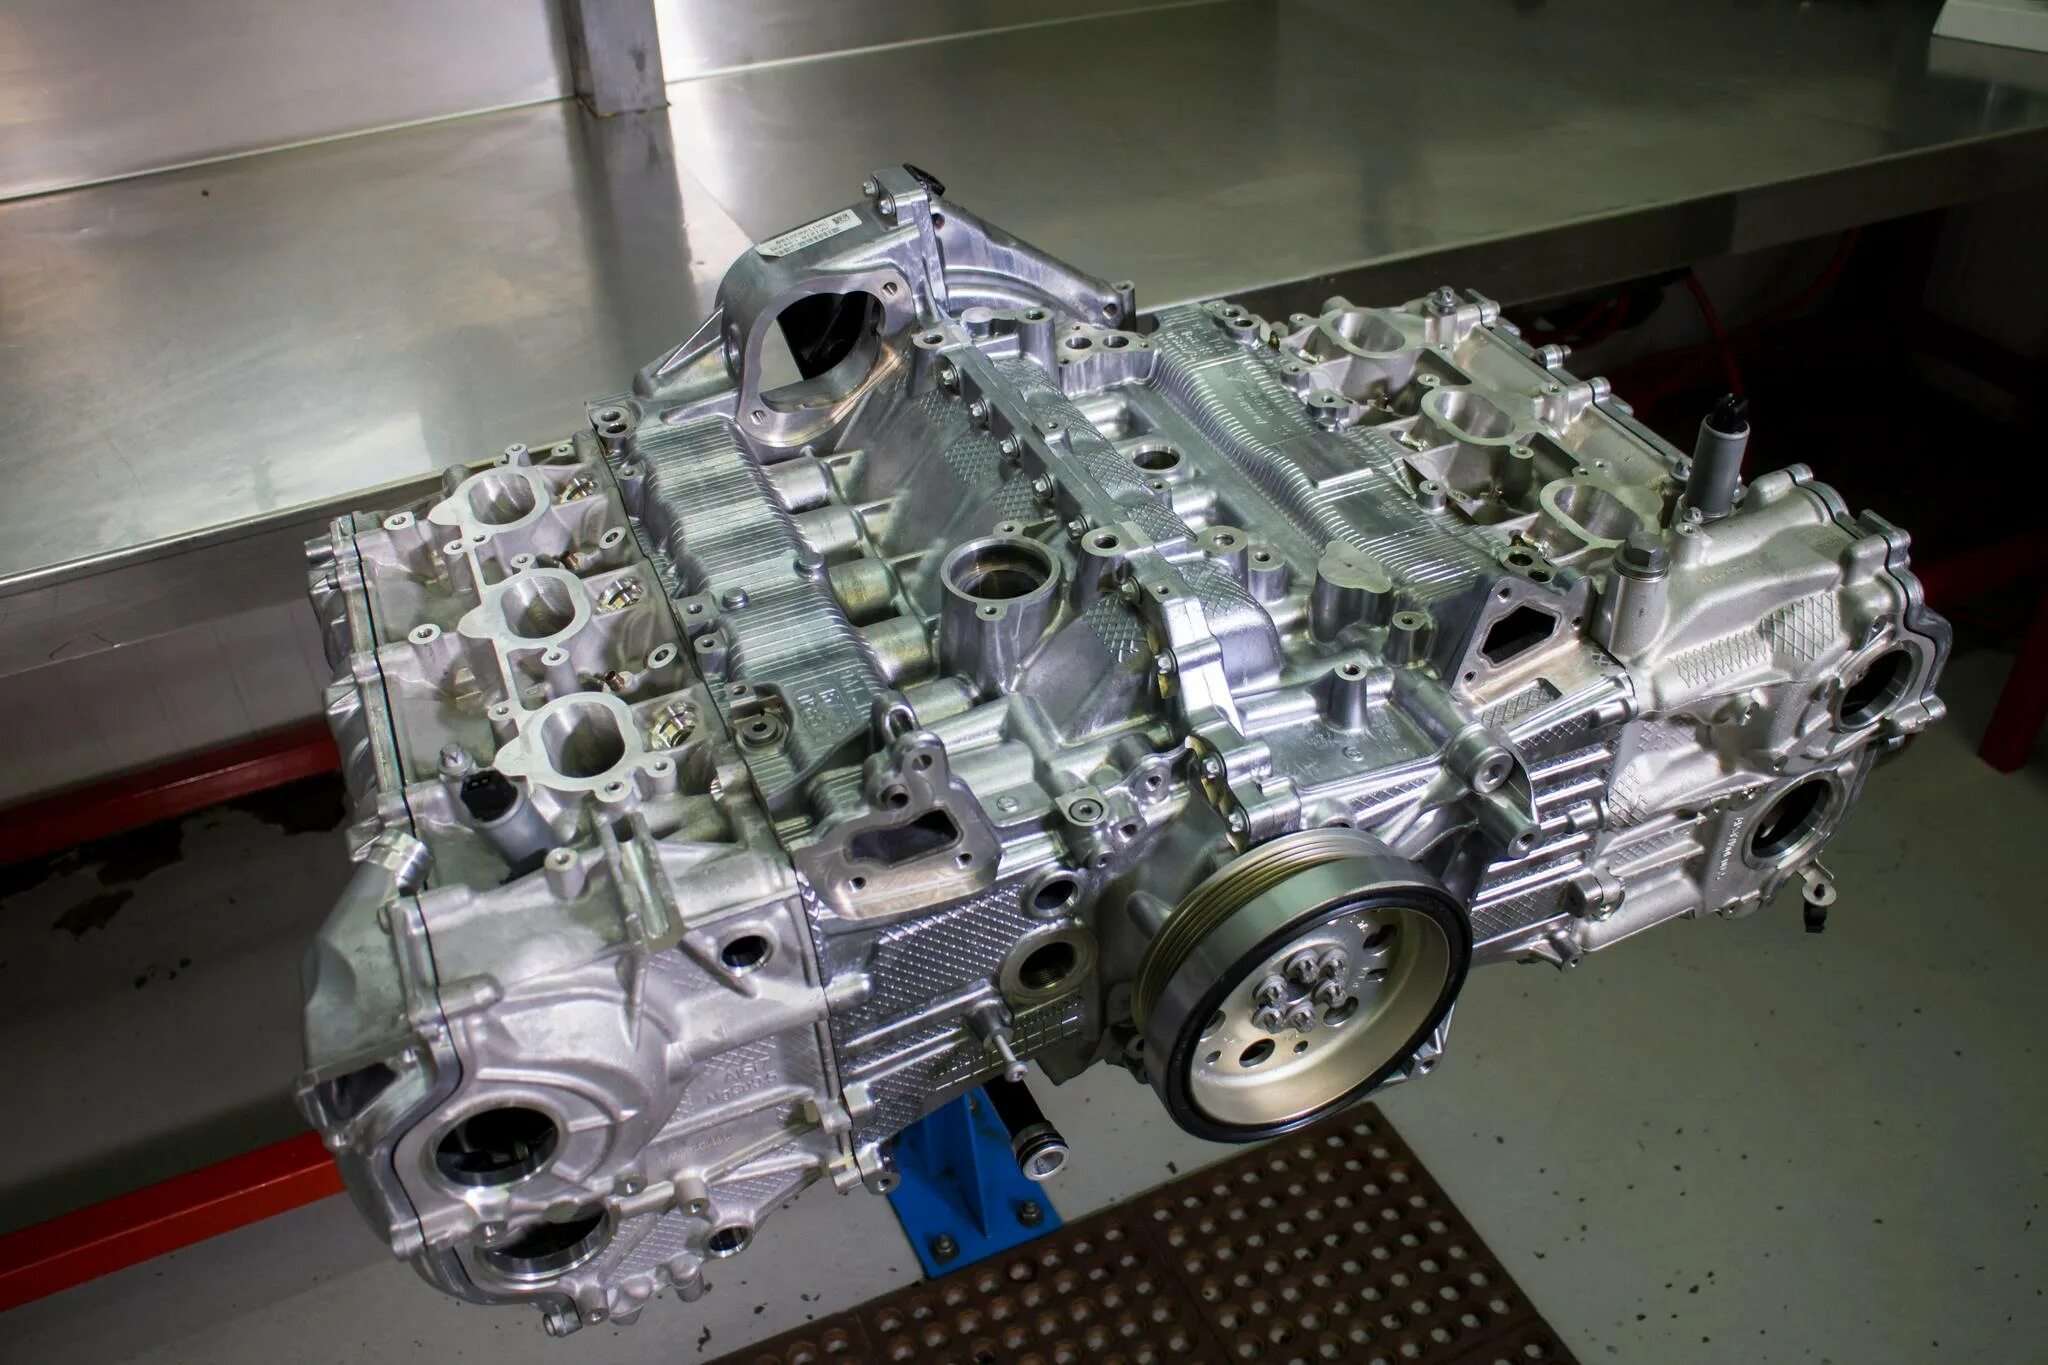 Оппозитный мотор Порше. Двигатель Субару 6 цилиндров. Мотор Porsche 3.6 оппозитный. Оппозитный двигатель Porsche 911. Flat engine